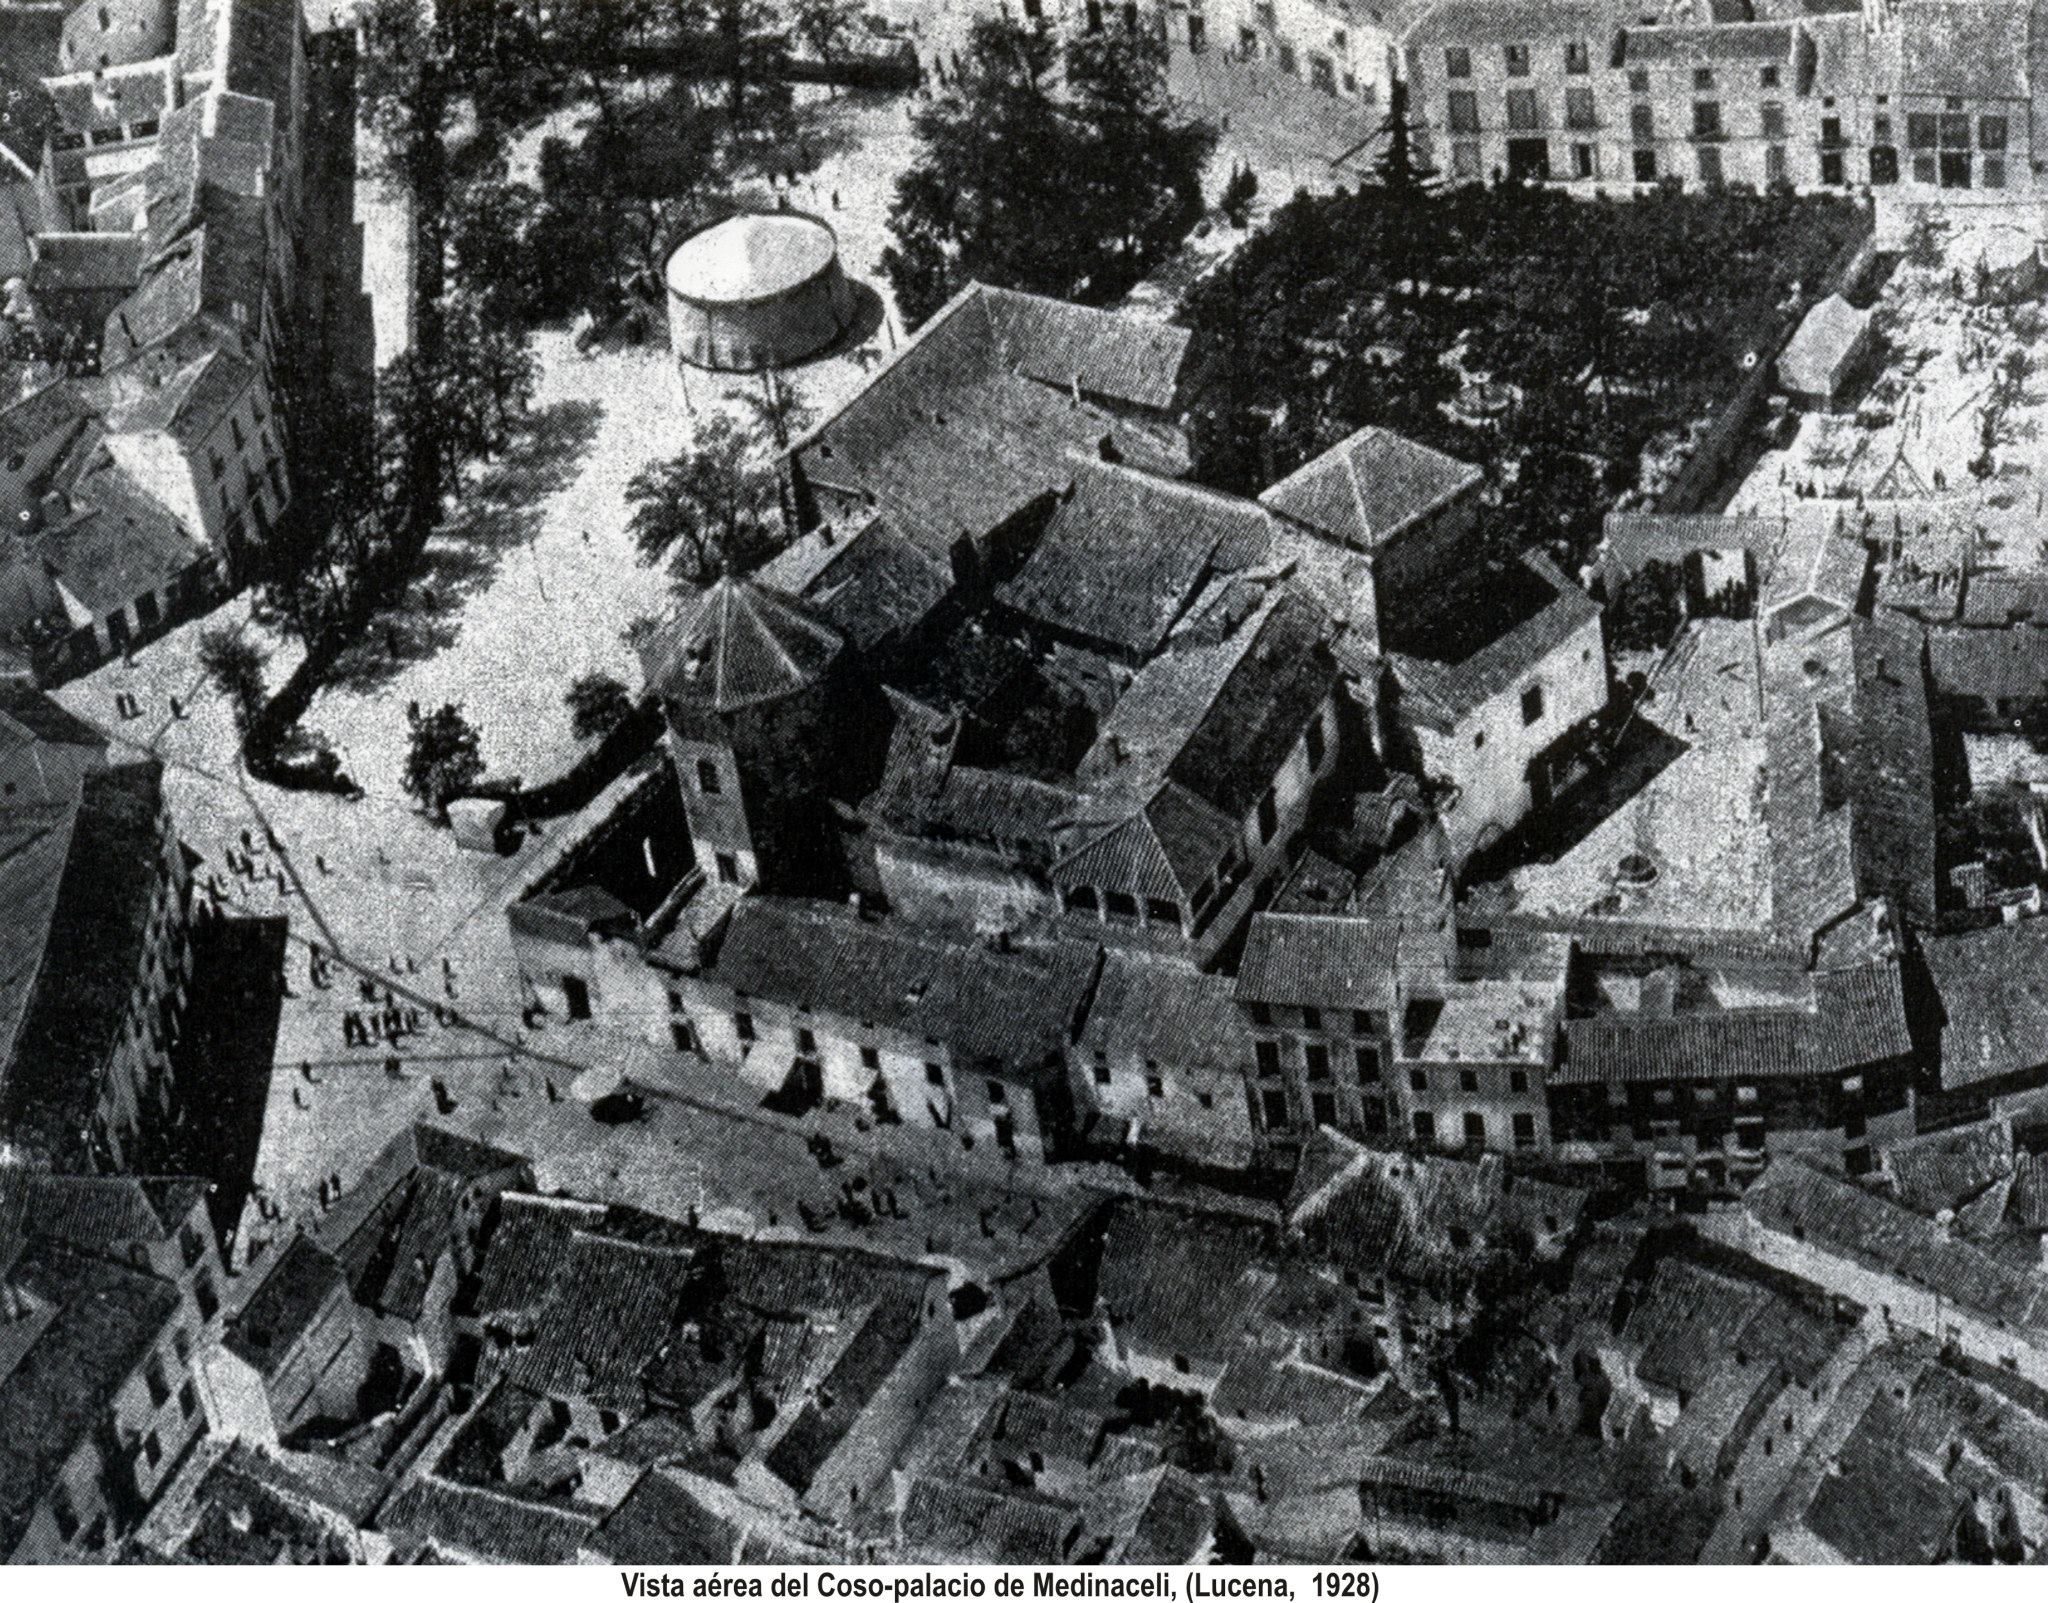 El Coso. Palacio de Medinaceli. Vista aerea 1928